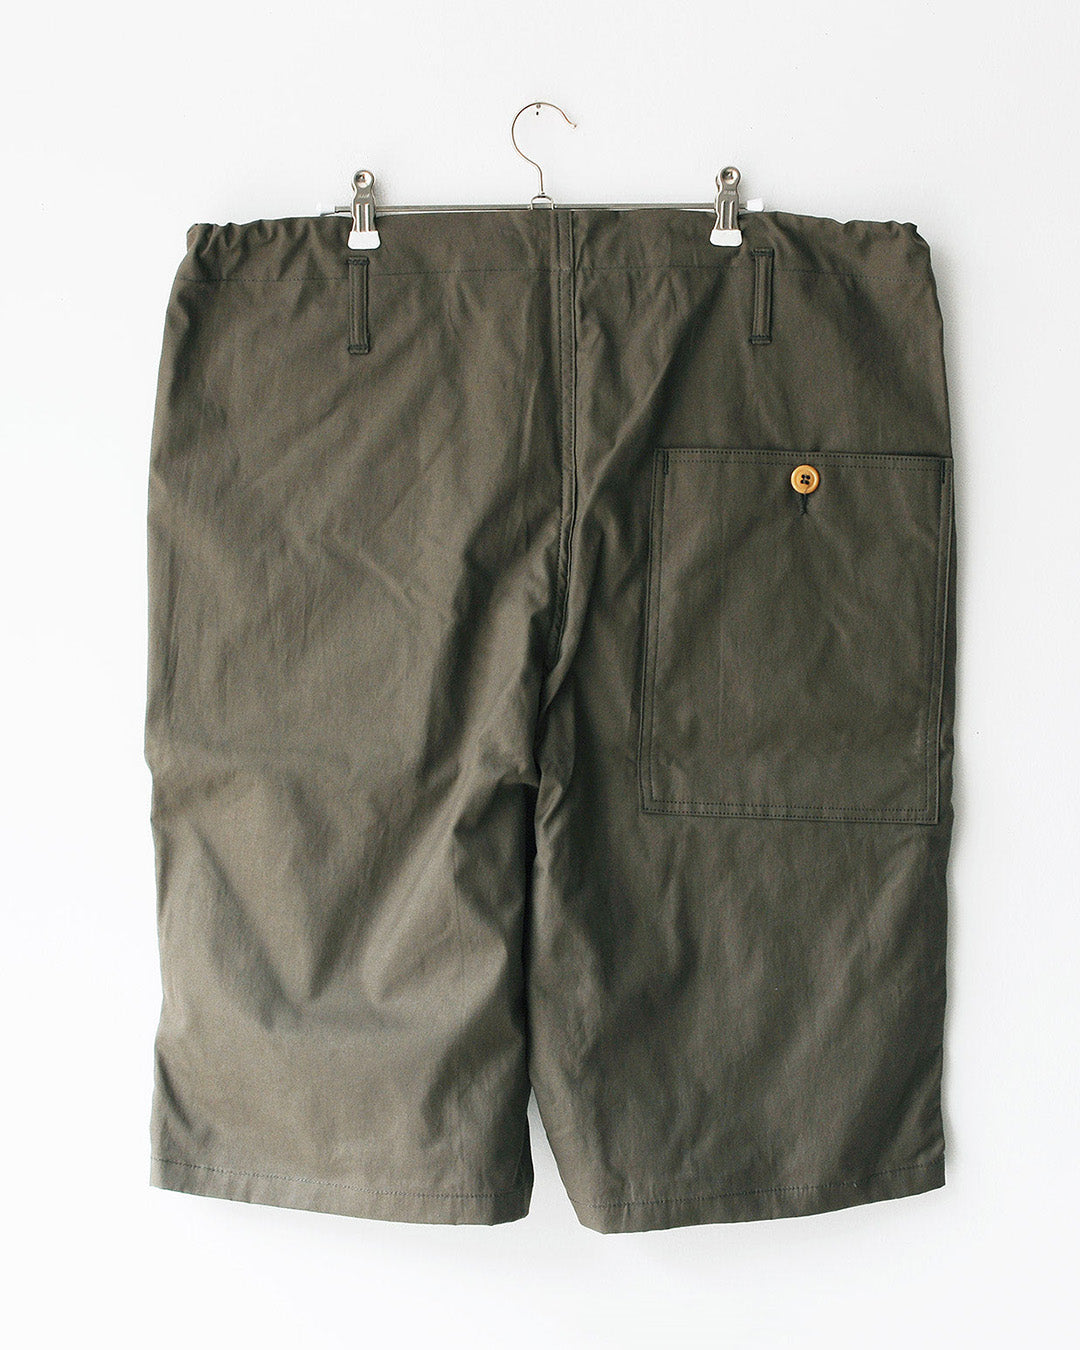 TUKI big shorts / O.D. / double gabardine / size2,4